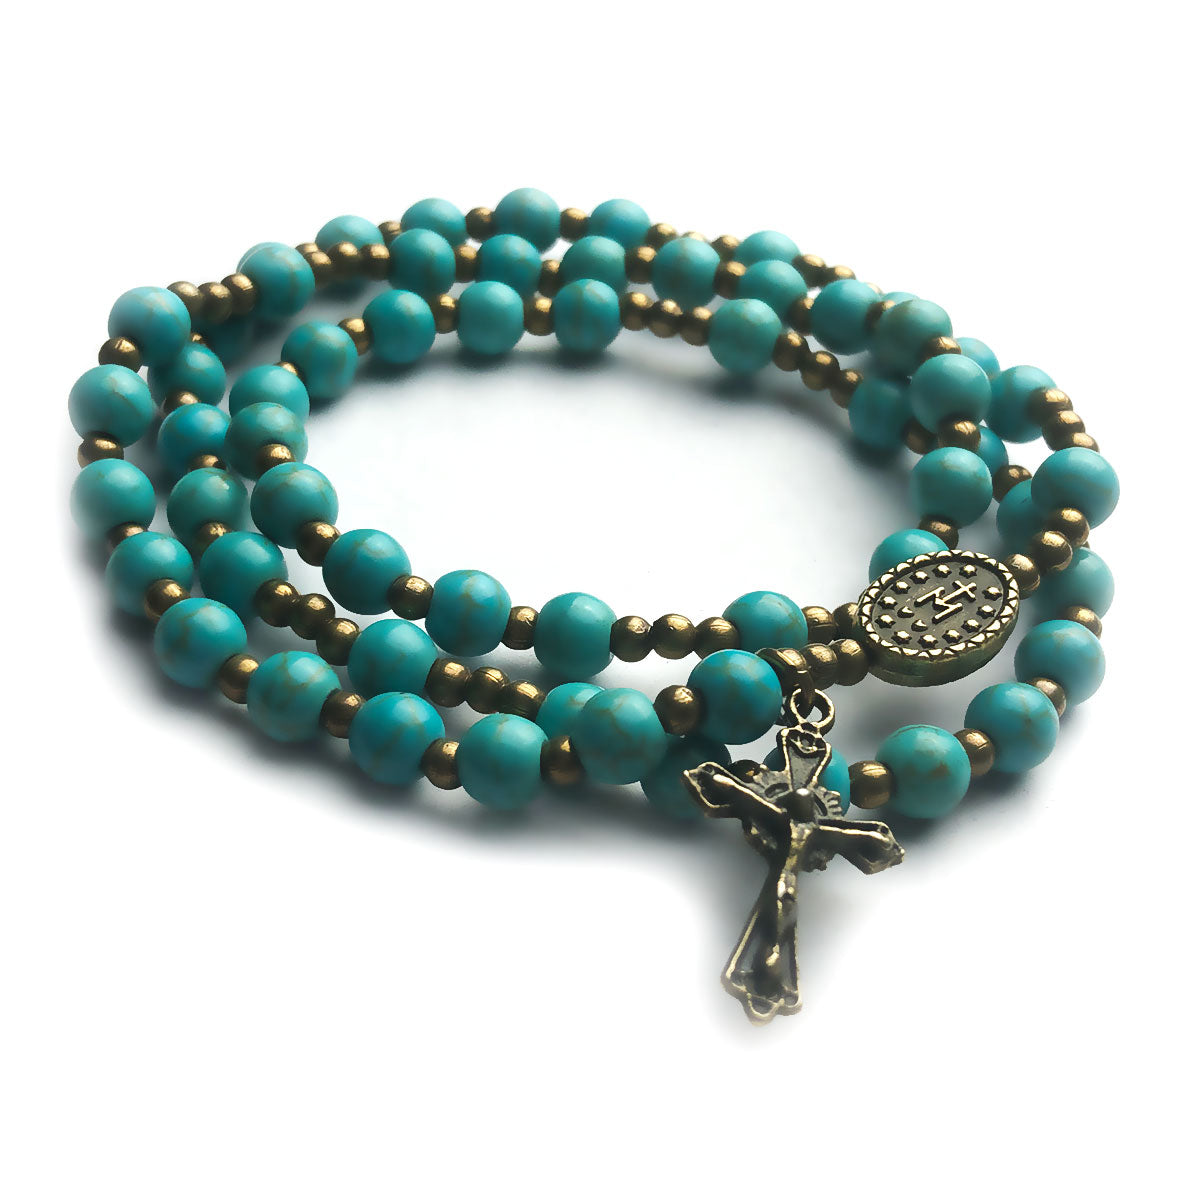 Turquoise Stone Full 5-Decade Catholic Rosary Bracelet by Catholic Heirlooms - Confirmation - Holy Communion Gift